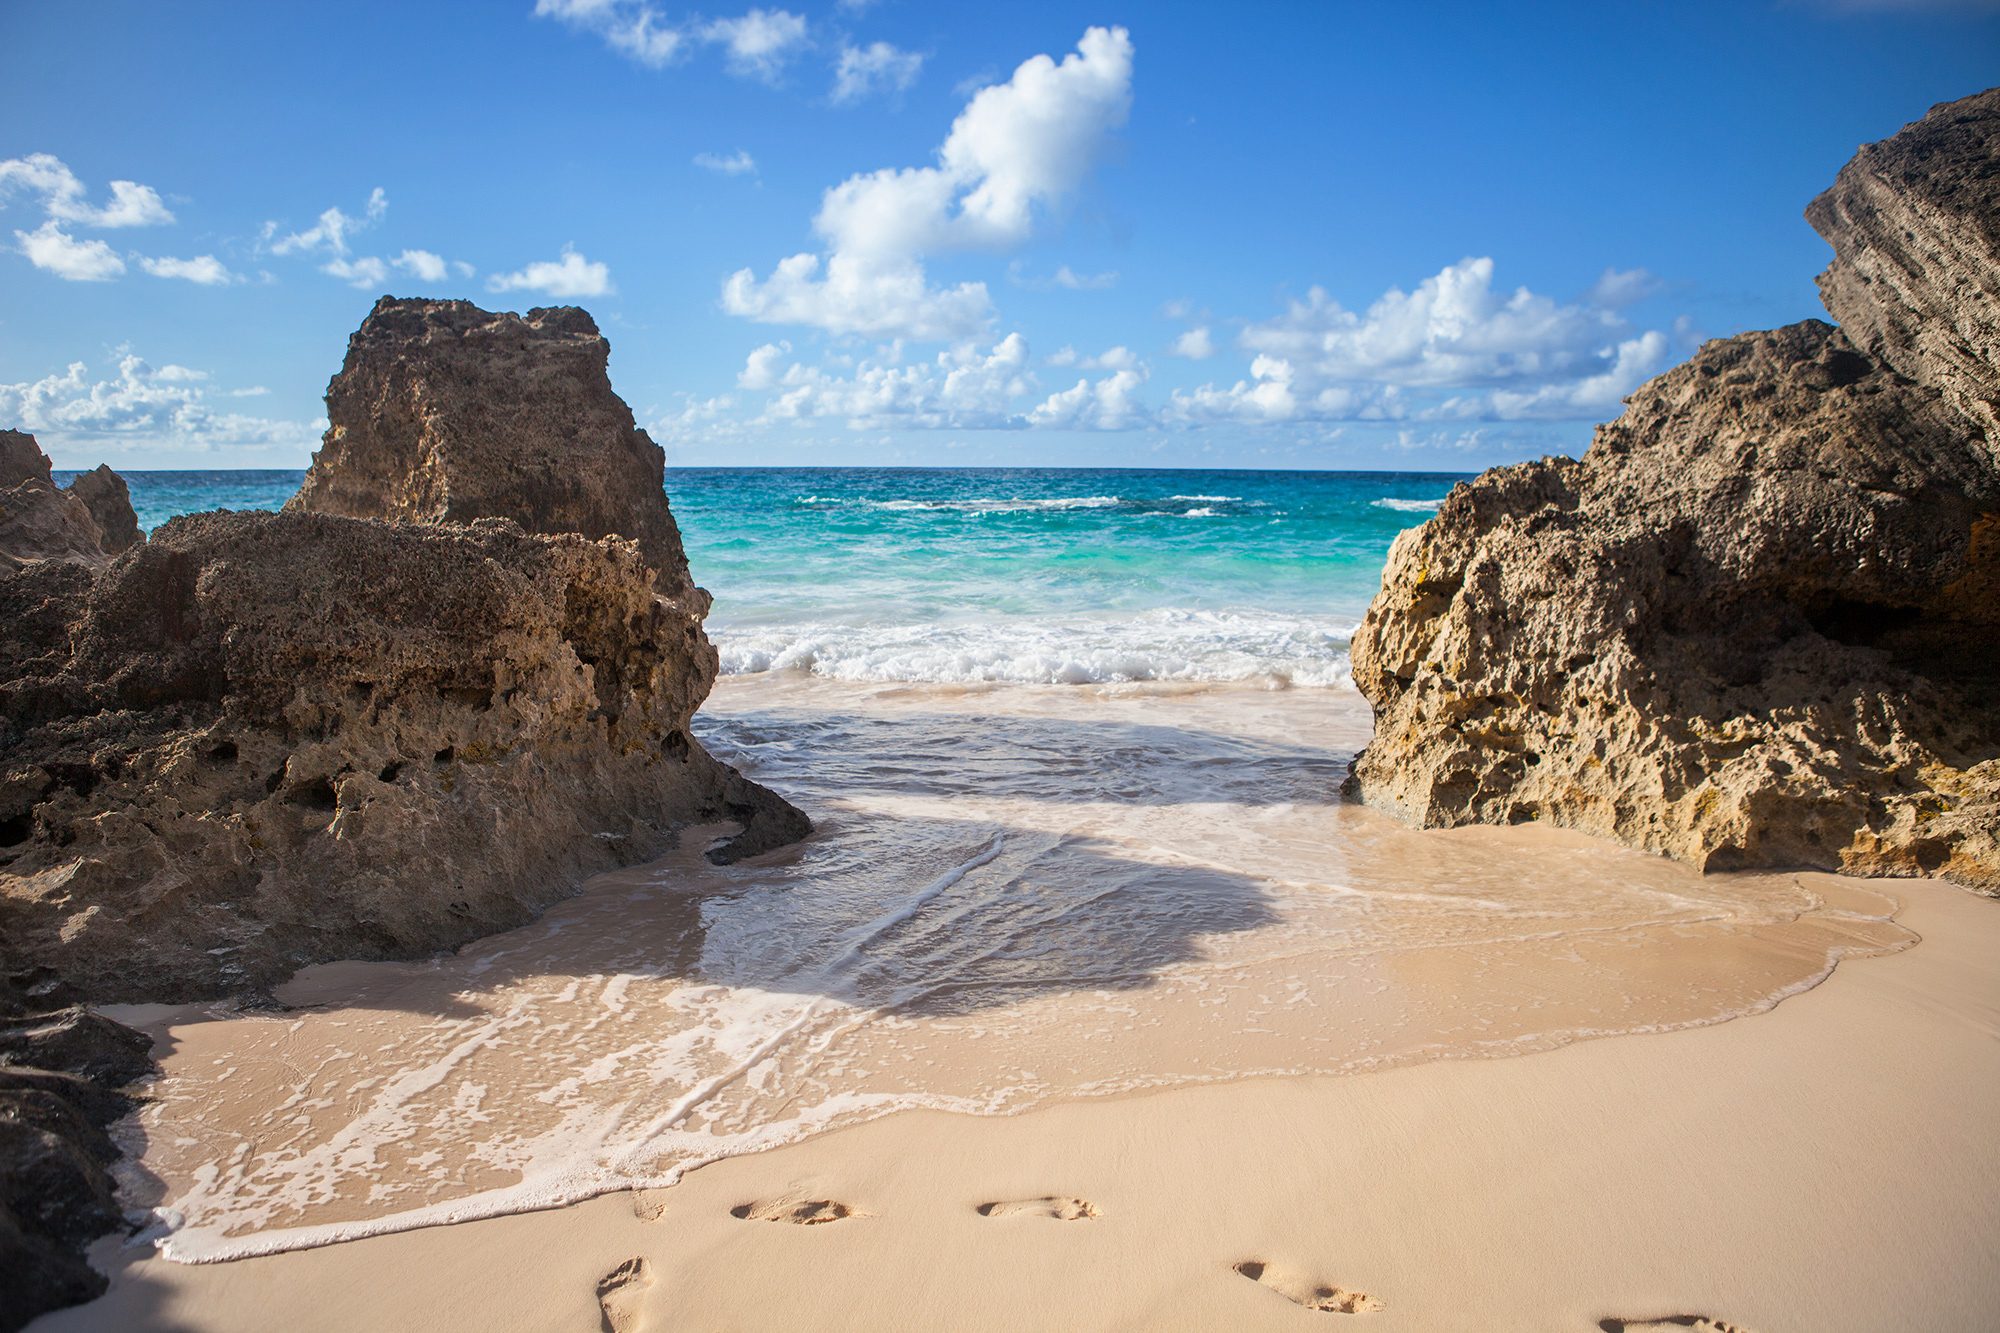 Beautiful sandy cove in Bermuda